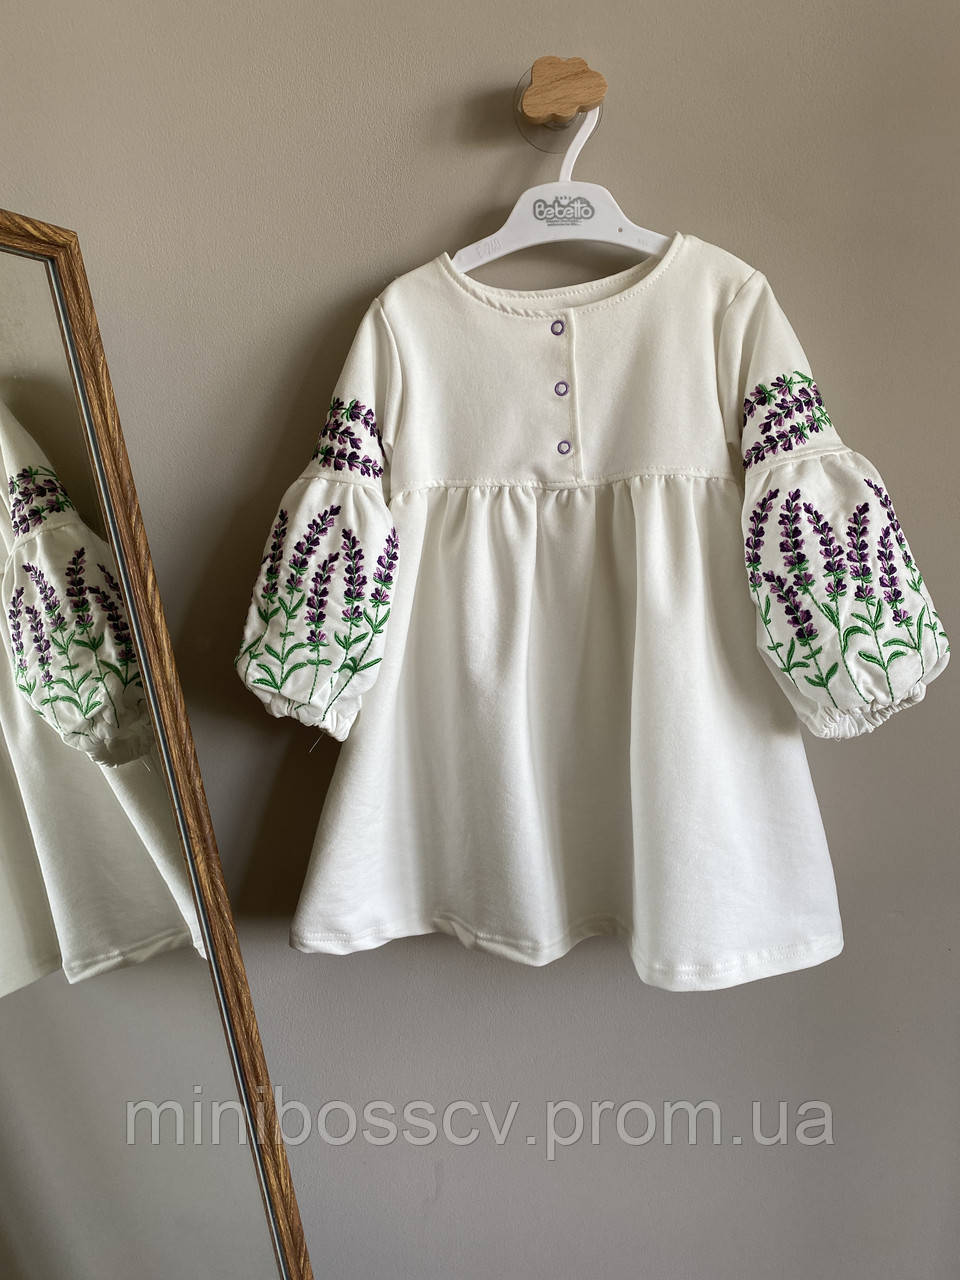 Вышиванка для девочки Лаванда платье молочное детское трикотажное с вышивкой